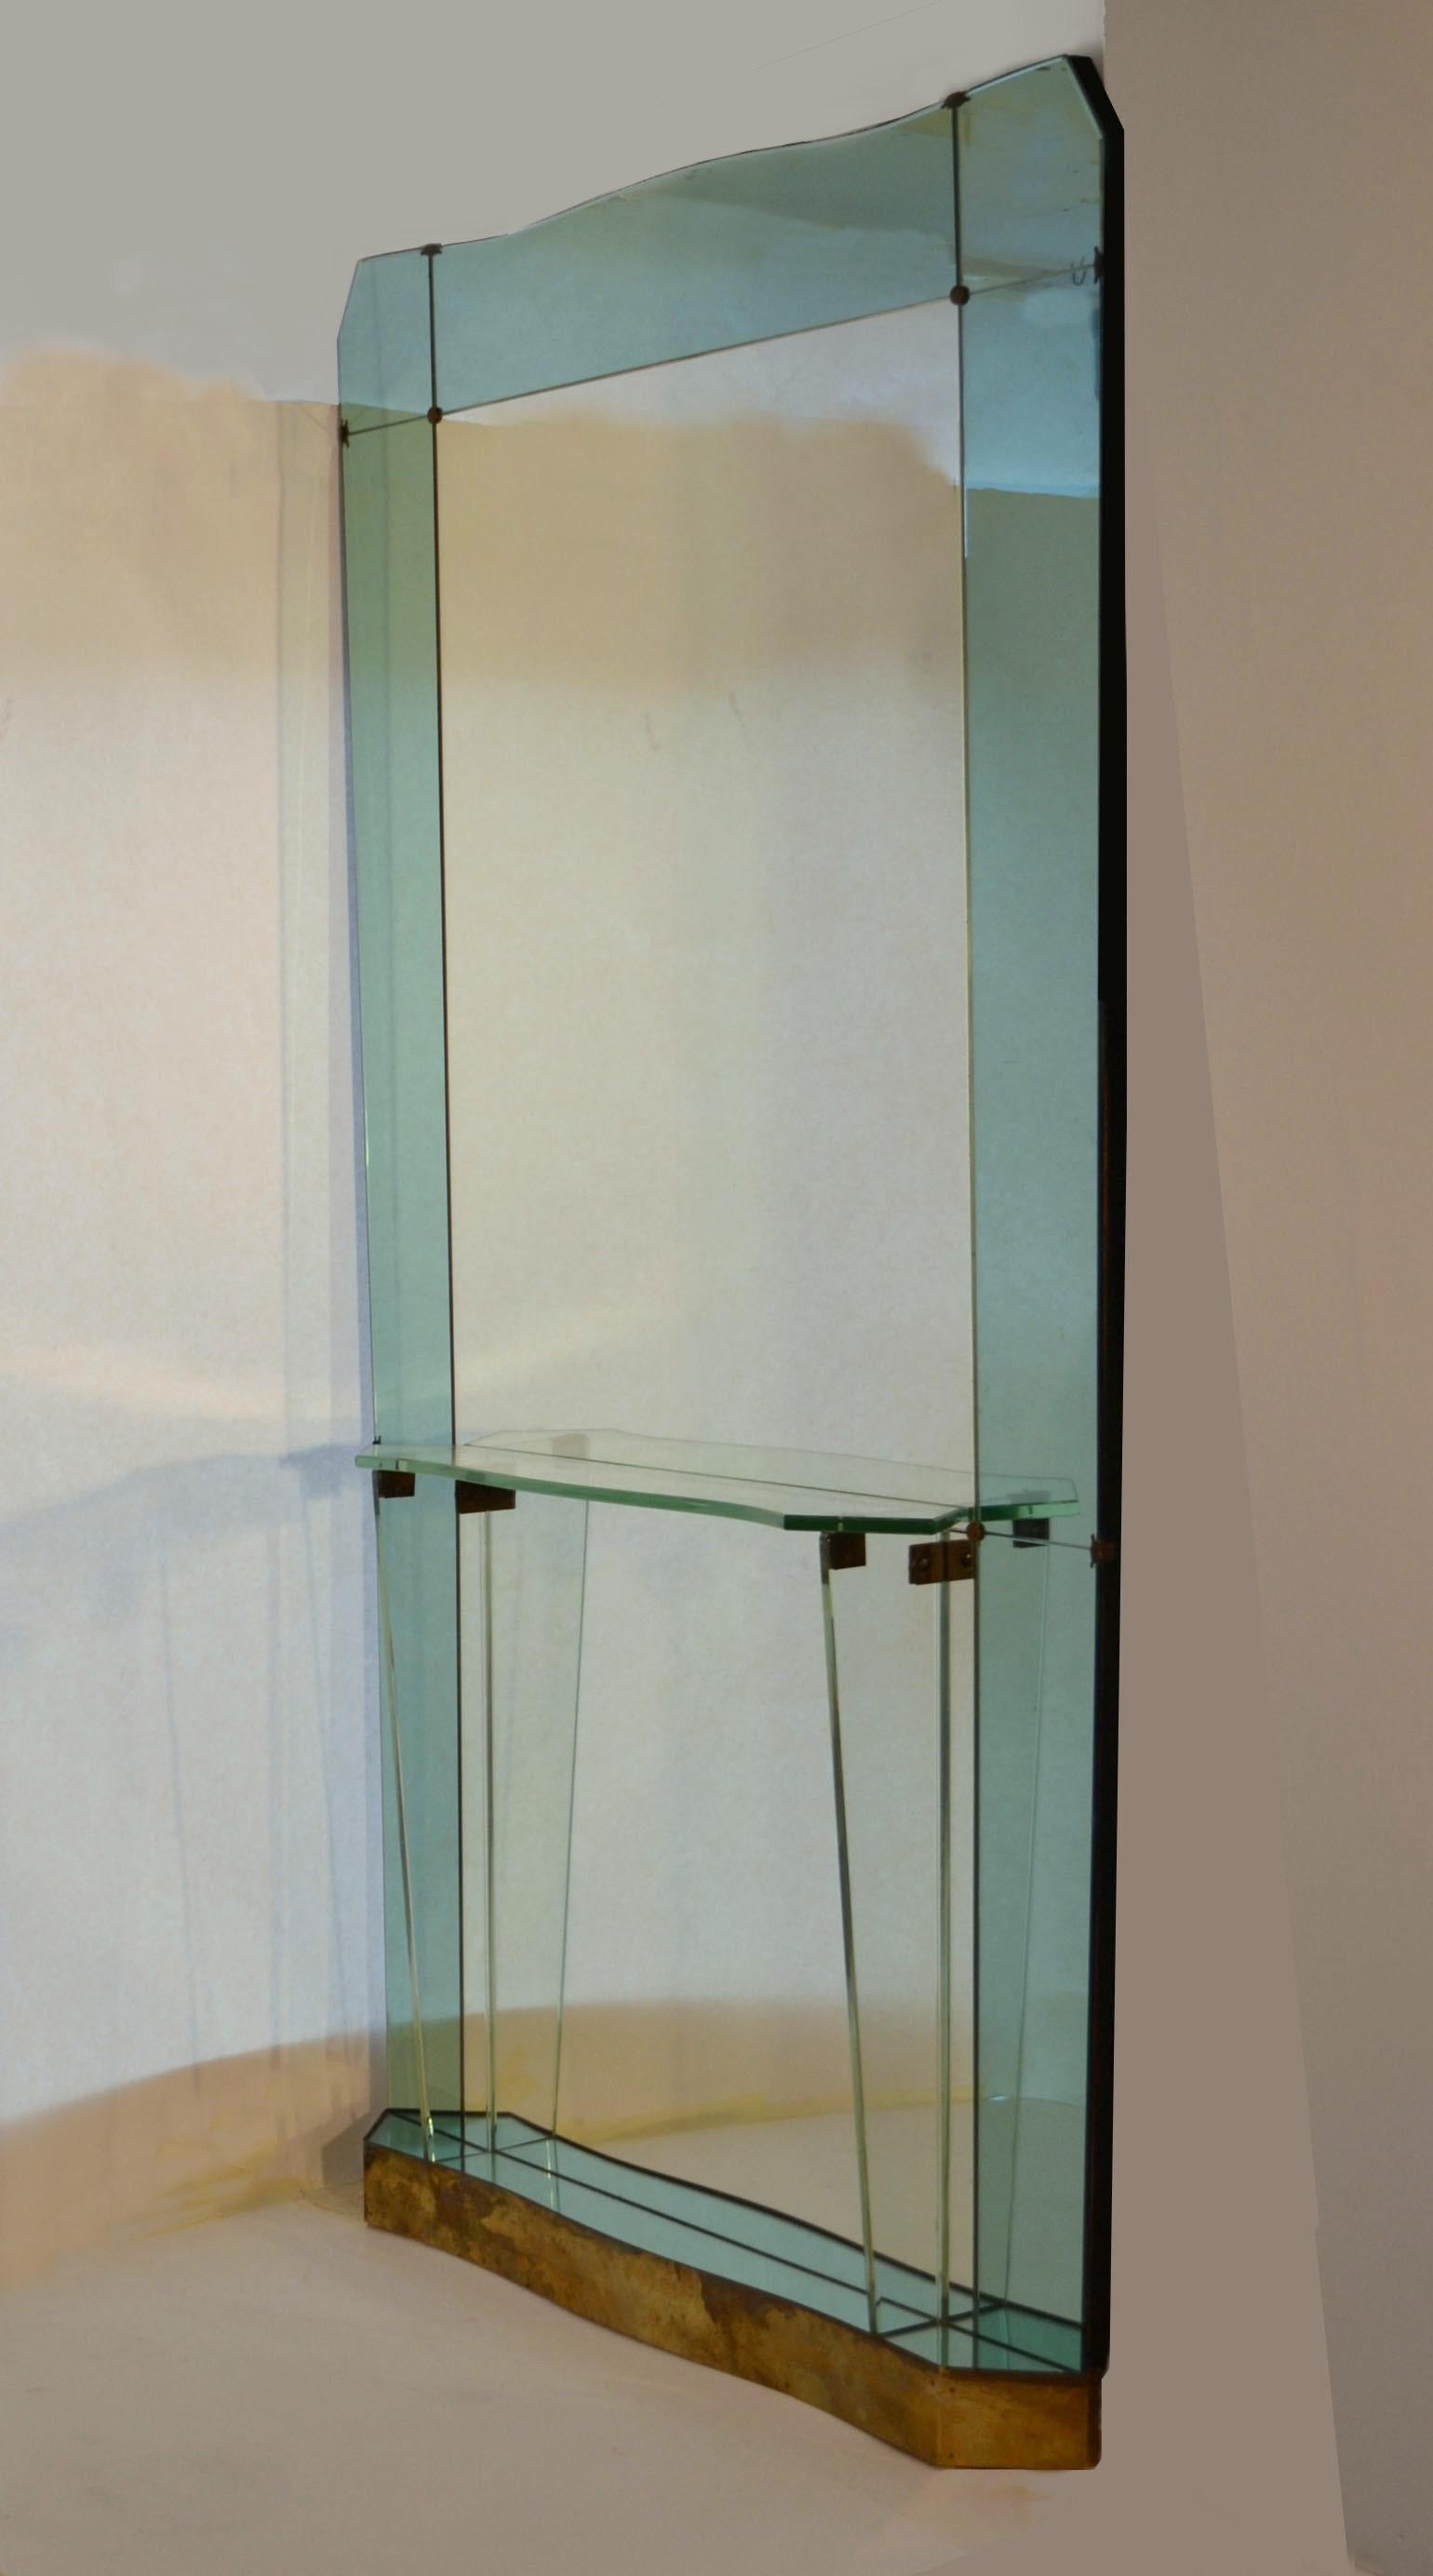 Originaler und seltener übergroßer Bodenspiegel mit Glaskonsole, zugeschrieben Crystal Arte / Fontana Arte / Santambrogio und De Berti, Italien, um 1950. Völlig originales altes abgeschrägtes Spiegelglas, gerahmt in blassgrünem Glasspiegel und